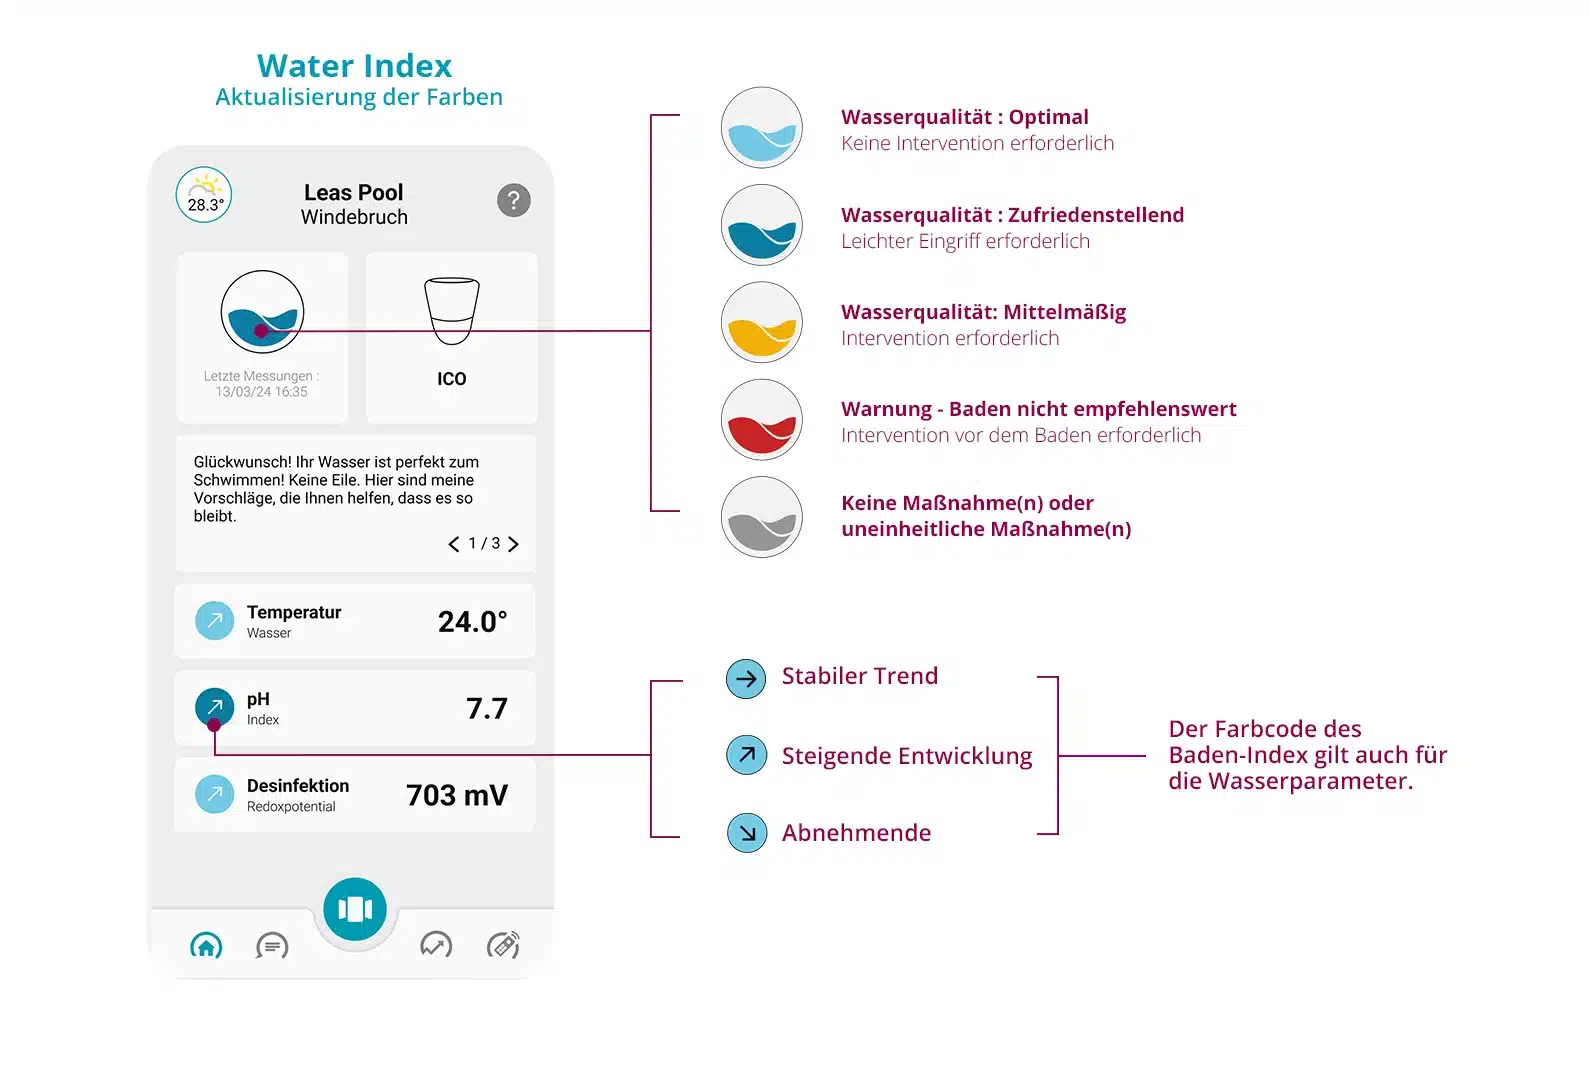 Visuel de l'application ICO qui montre et détail le water index avec son interface ainsi que son code couleur